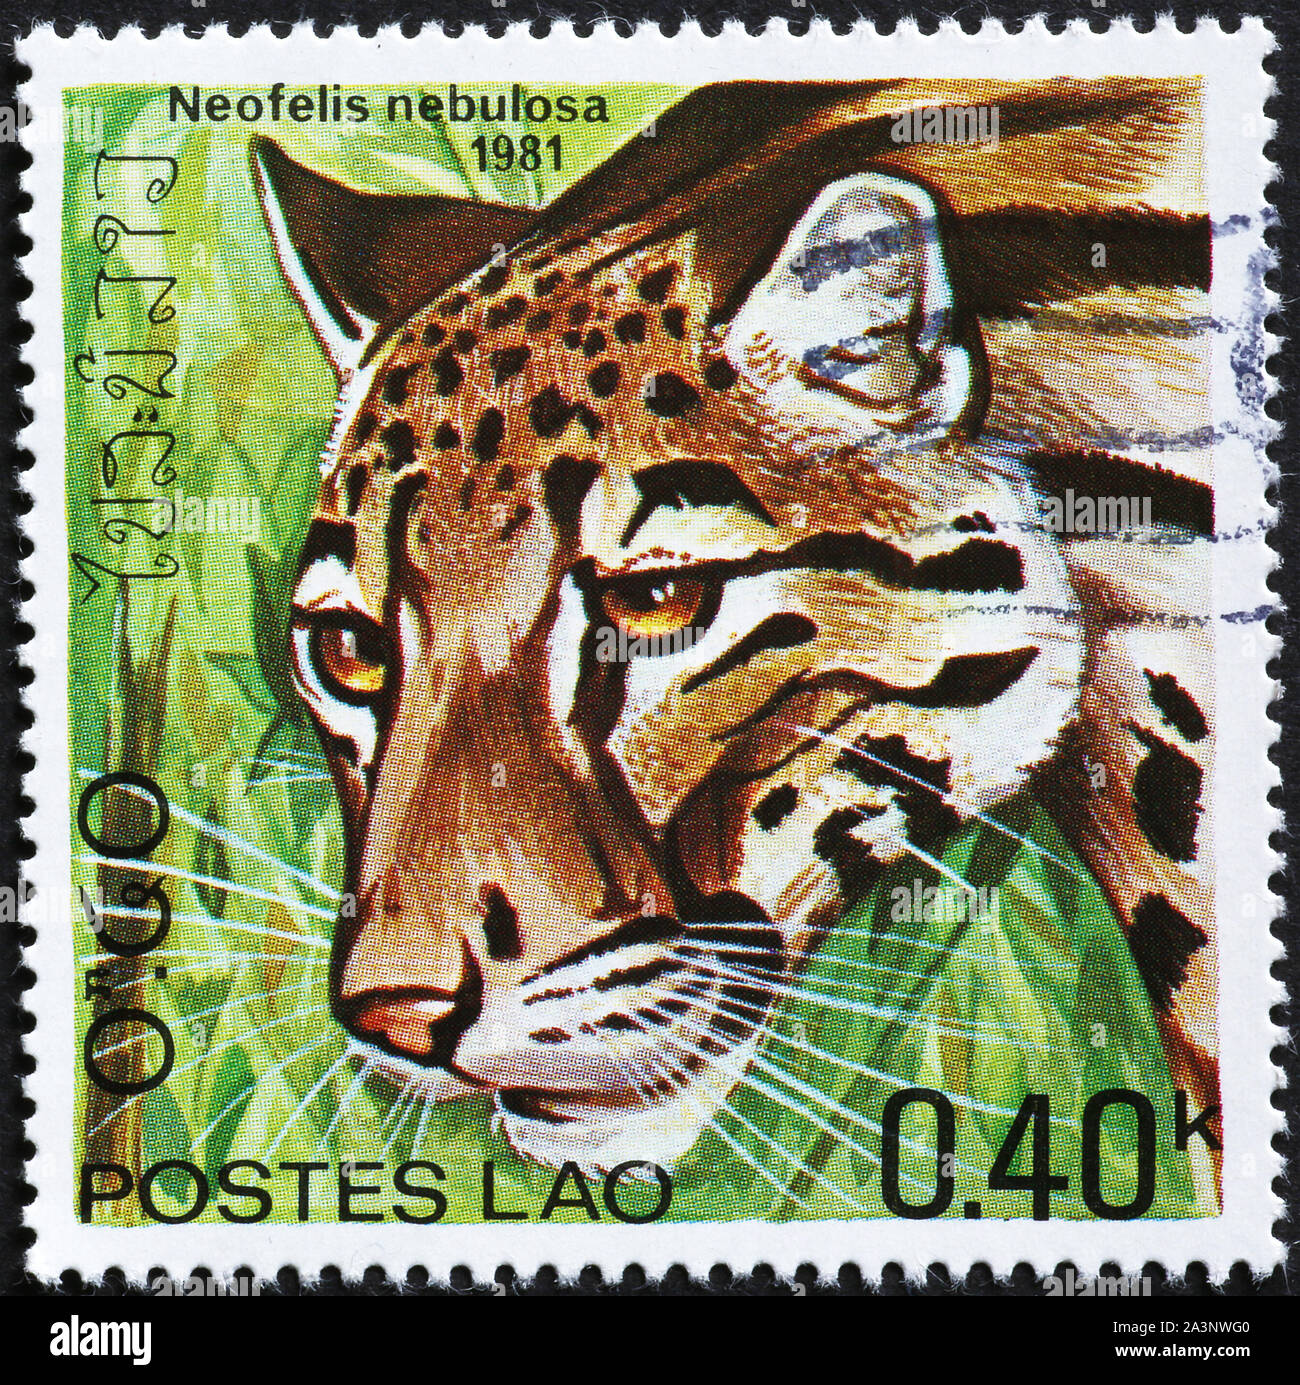 La panthère nébuleuse sur timbres-poste du Laos Banque D'Images